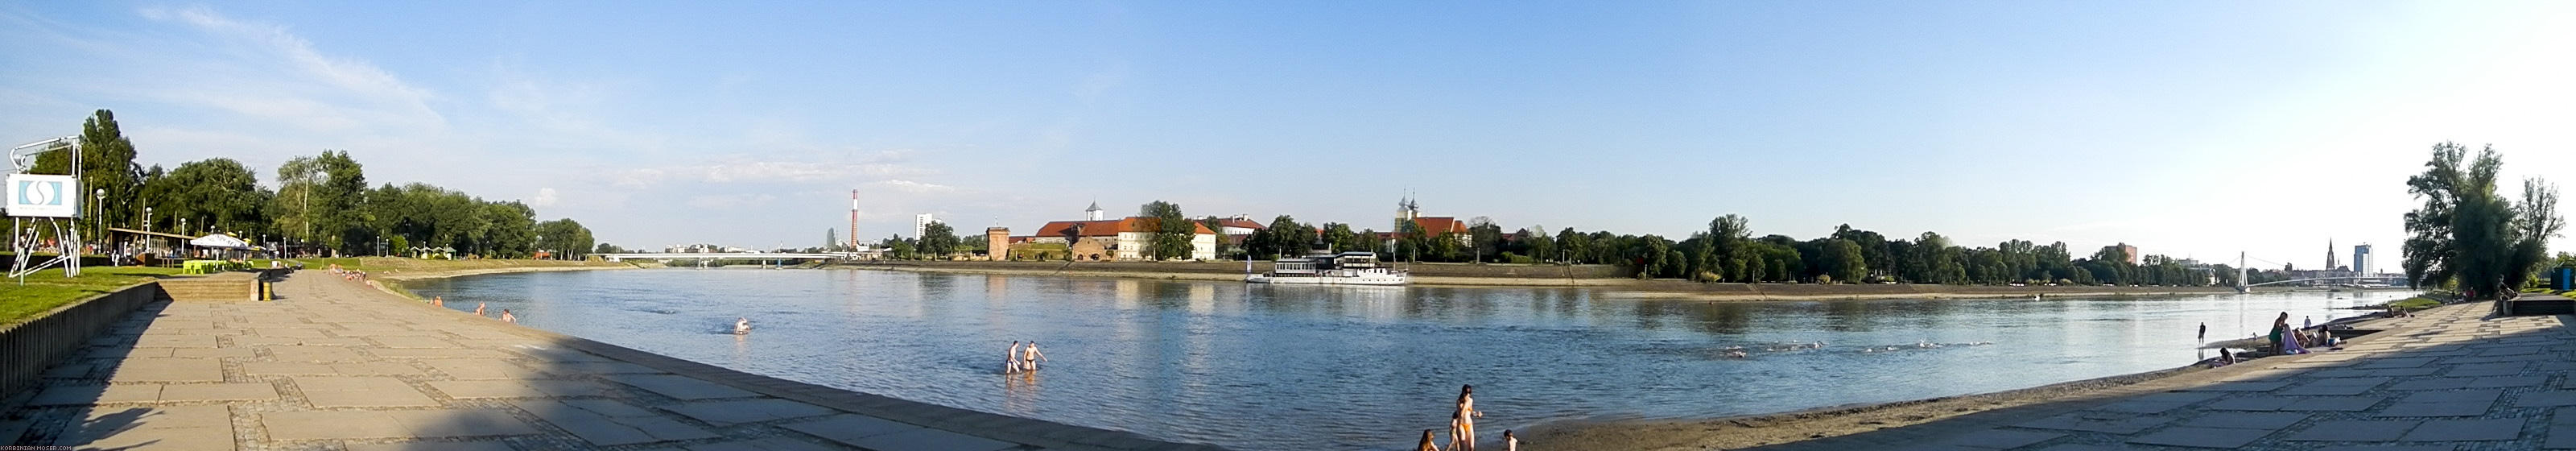 Osijek has a beautiful beach along the Drava river.